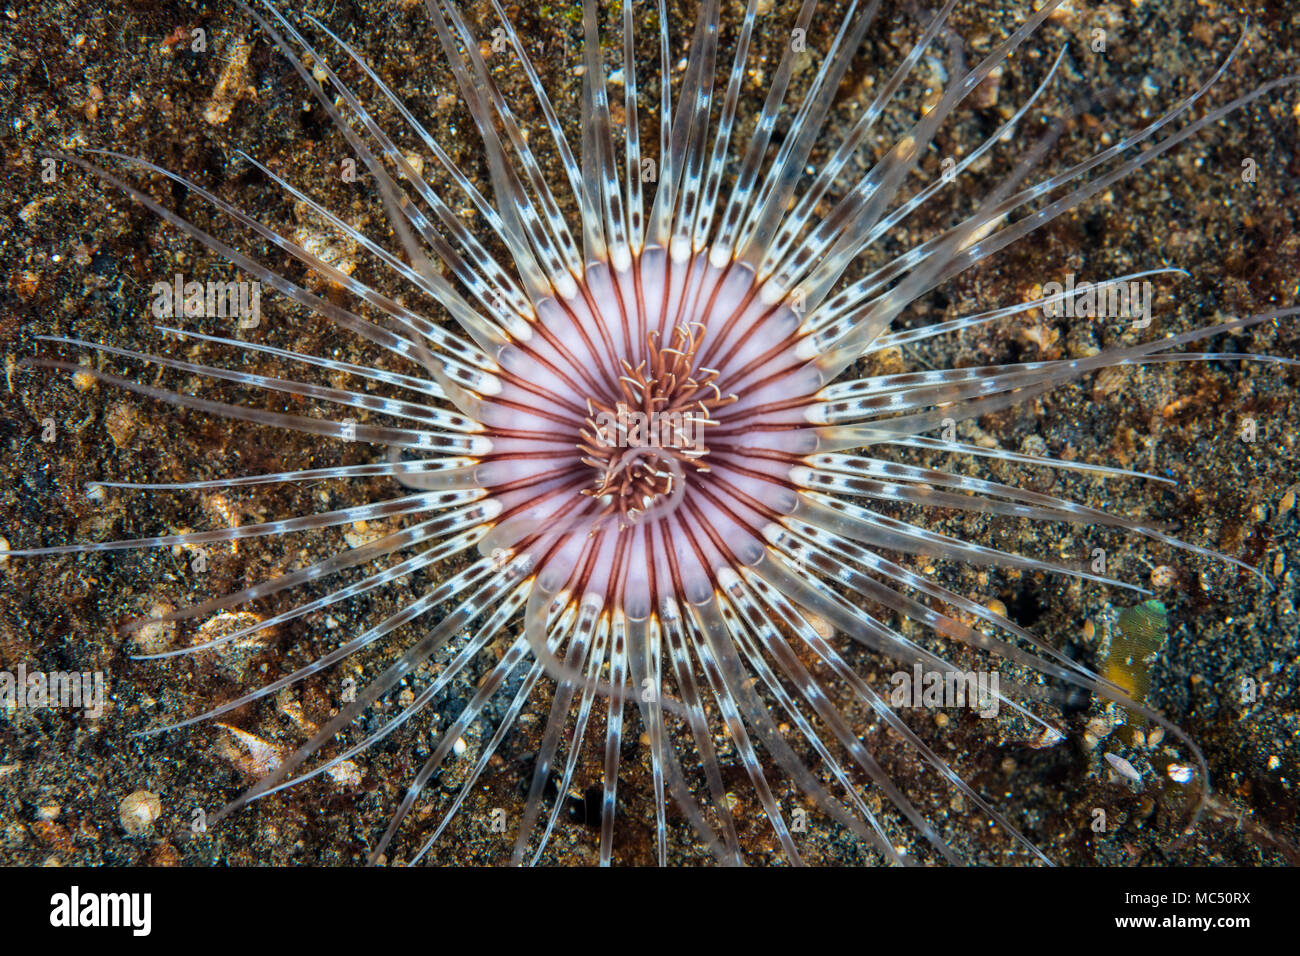 Ein schönes Rohr - Wohnung Anemone wartet auf Planktonischen Beute innerhalb der Reichweite der seine Tentakel in Lembeh Strait, Indonesien zu kommen. Stockfoto